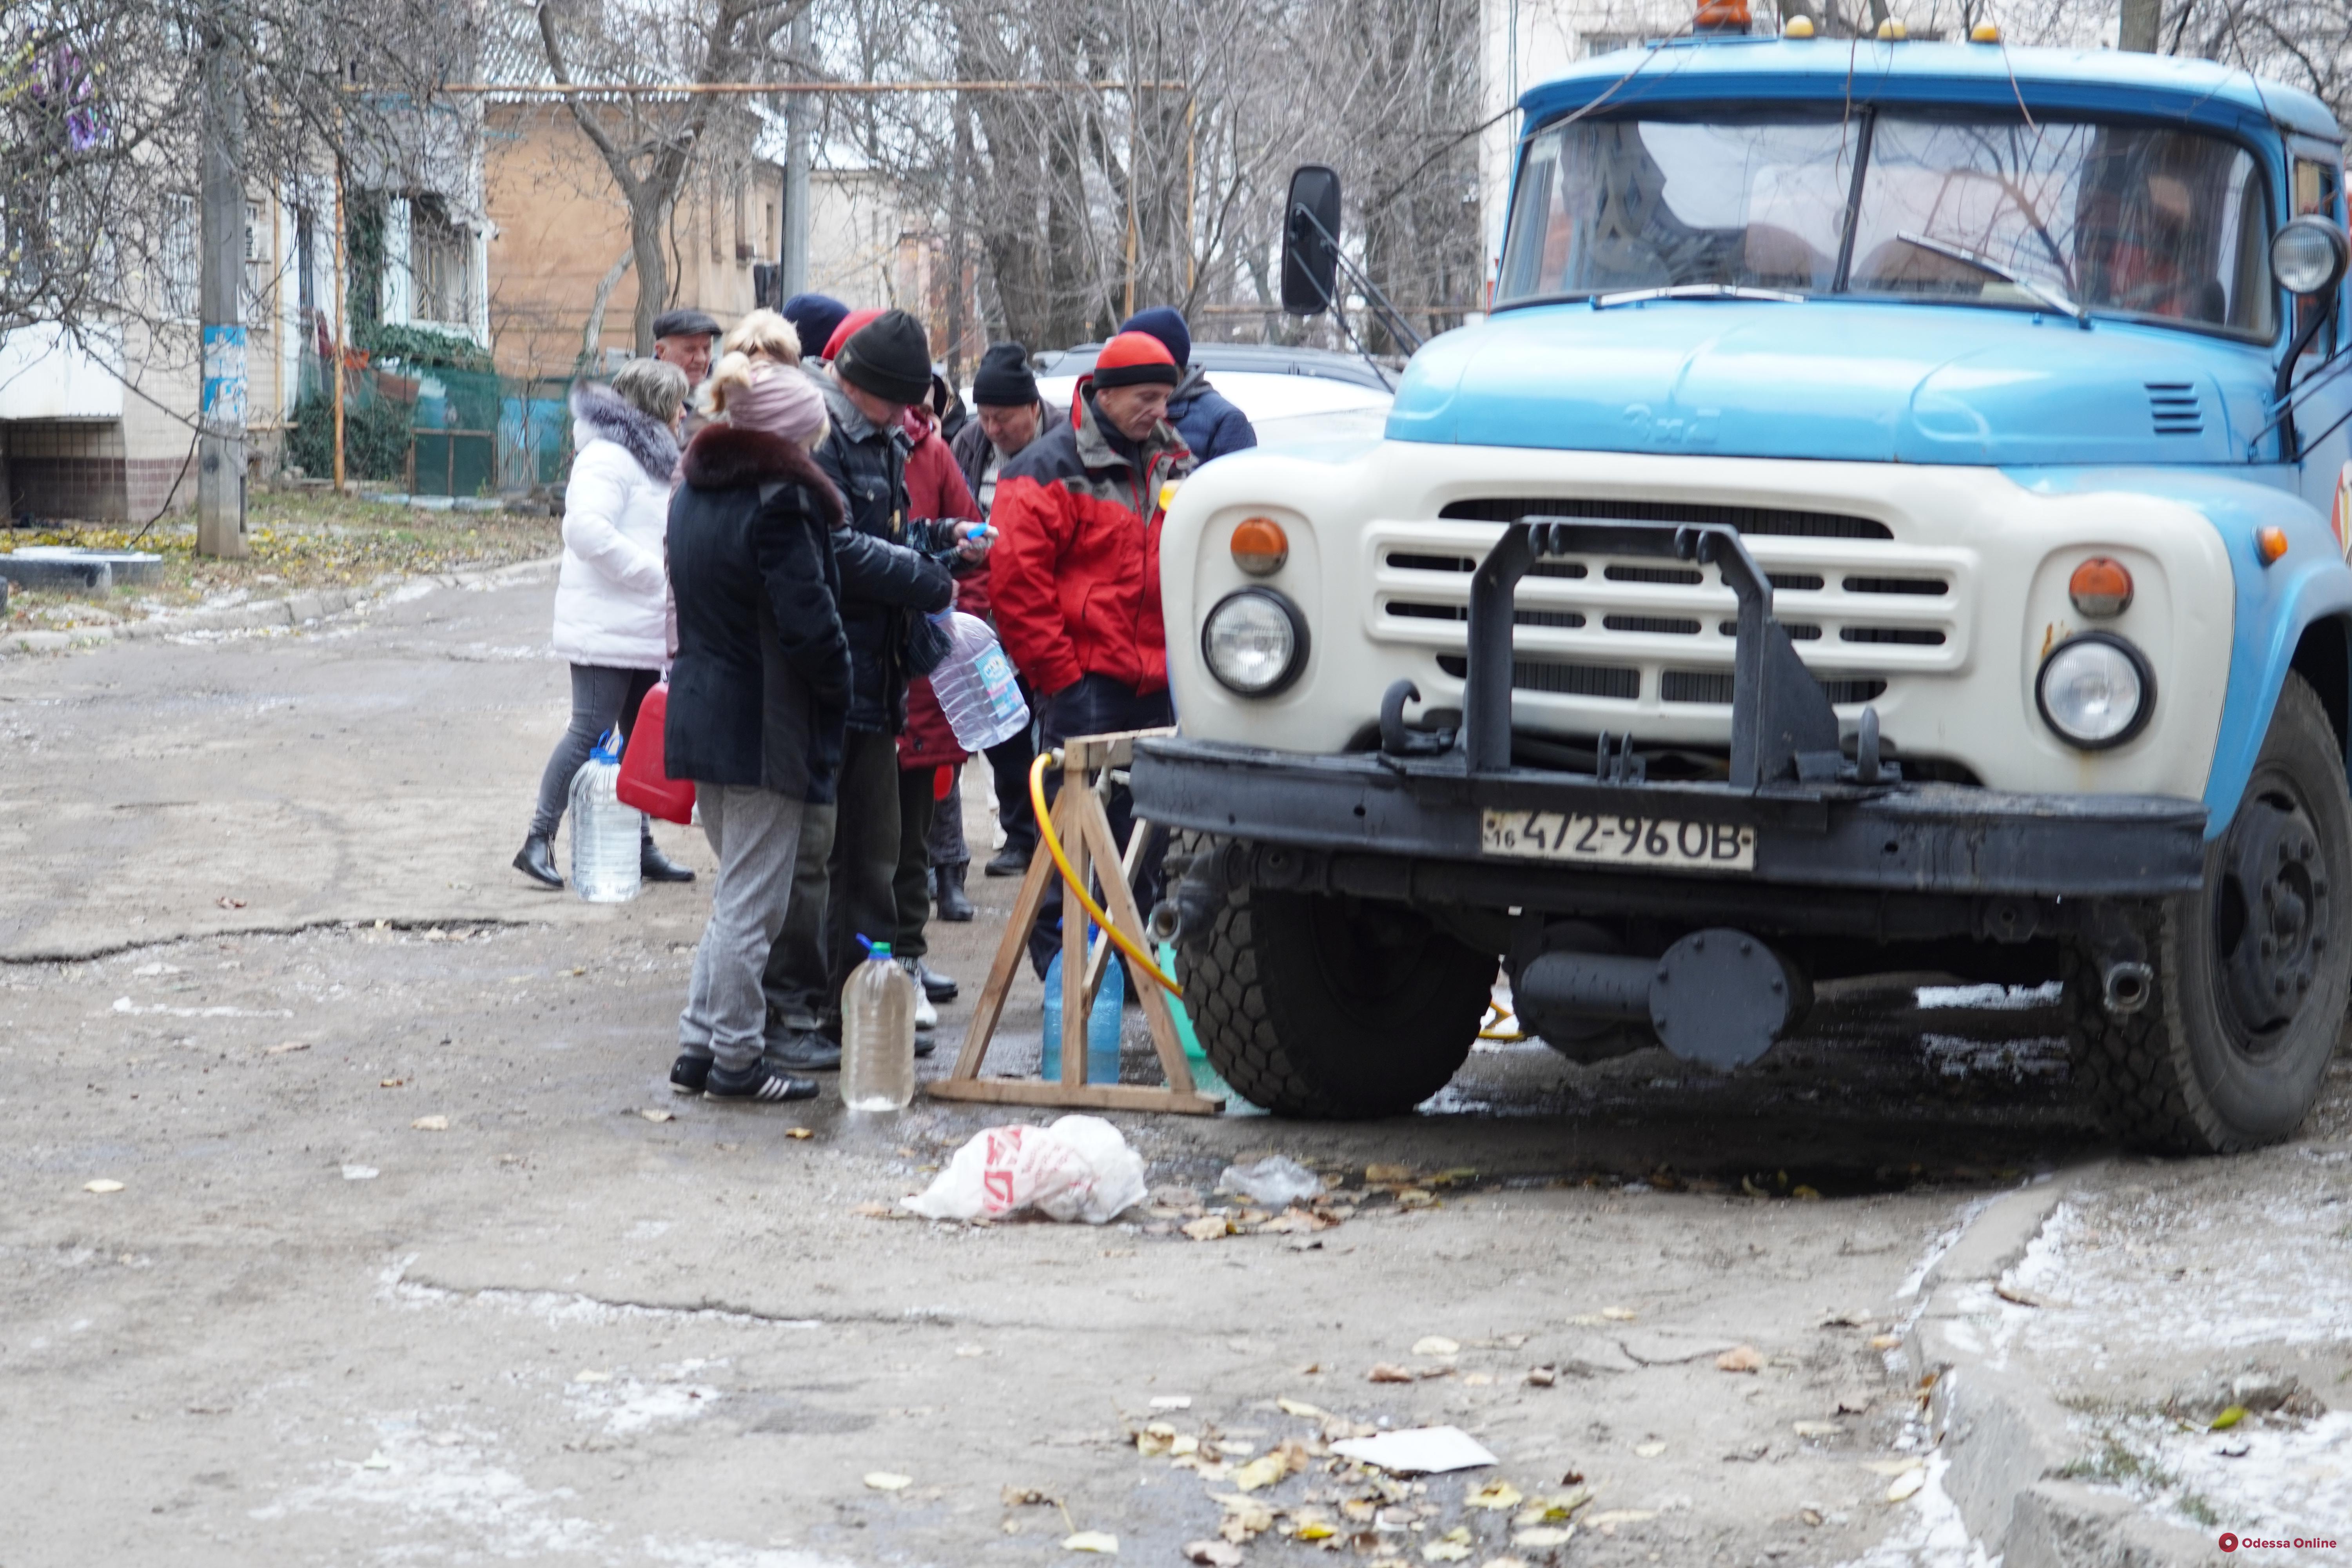 Как в Одессе работают пункты раздачи воды (фото)